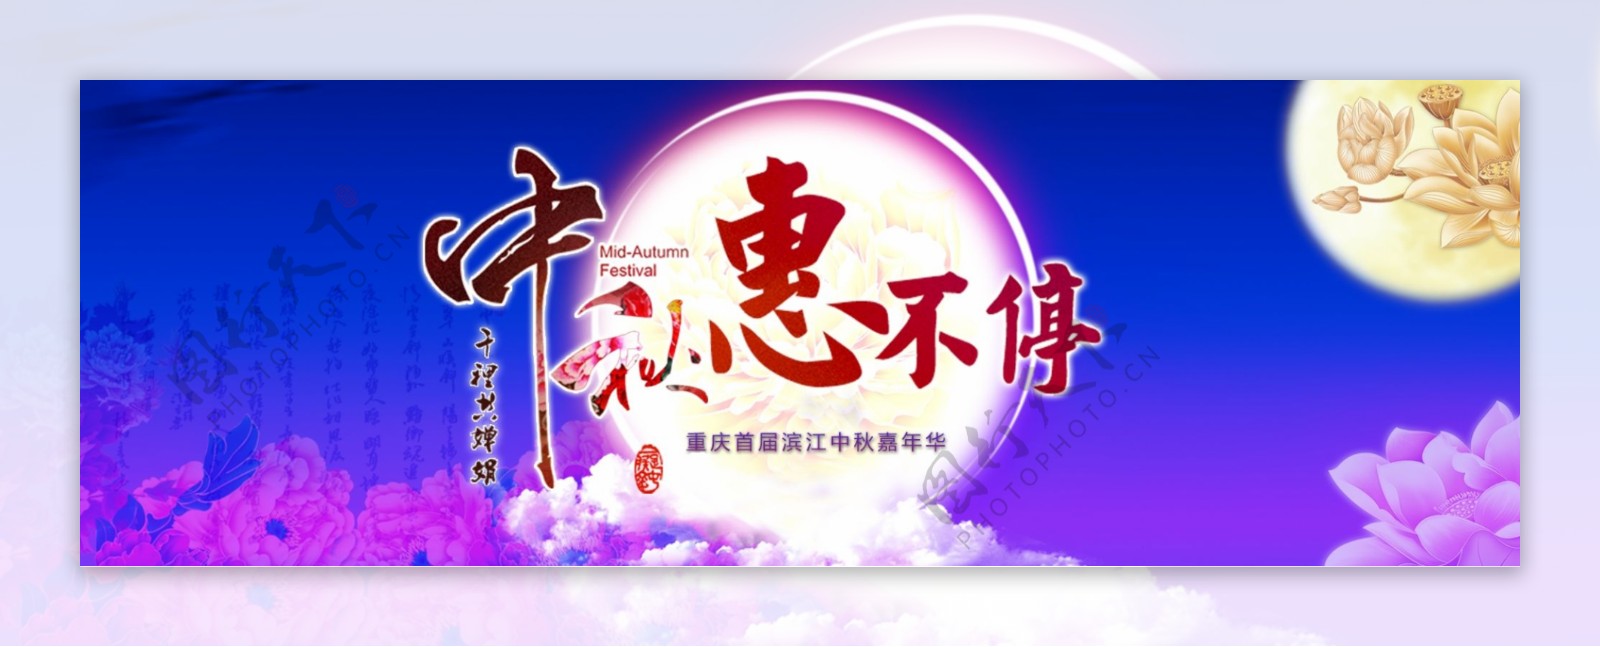 紫色唯美中秋节淘宝促销海报